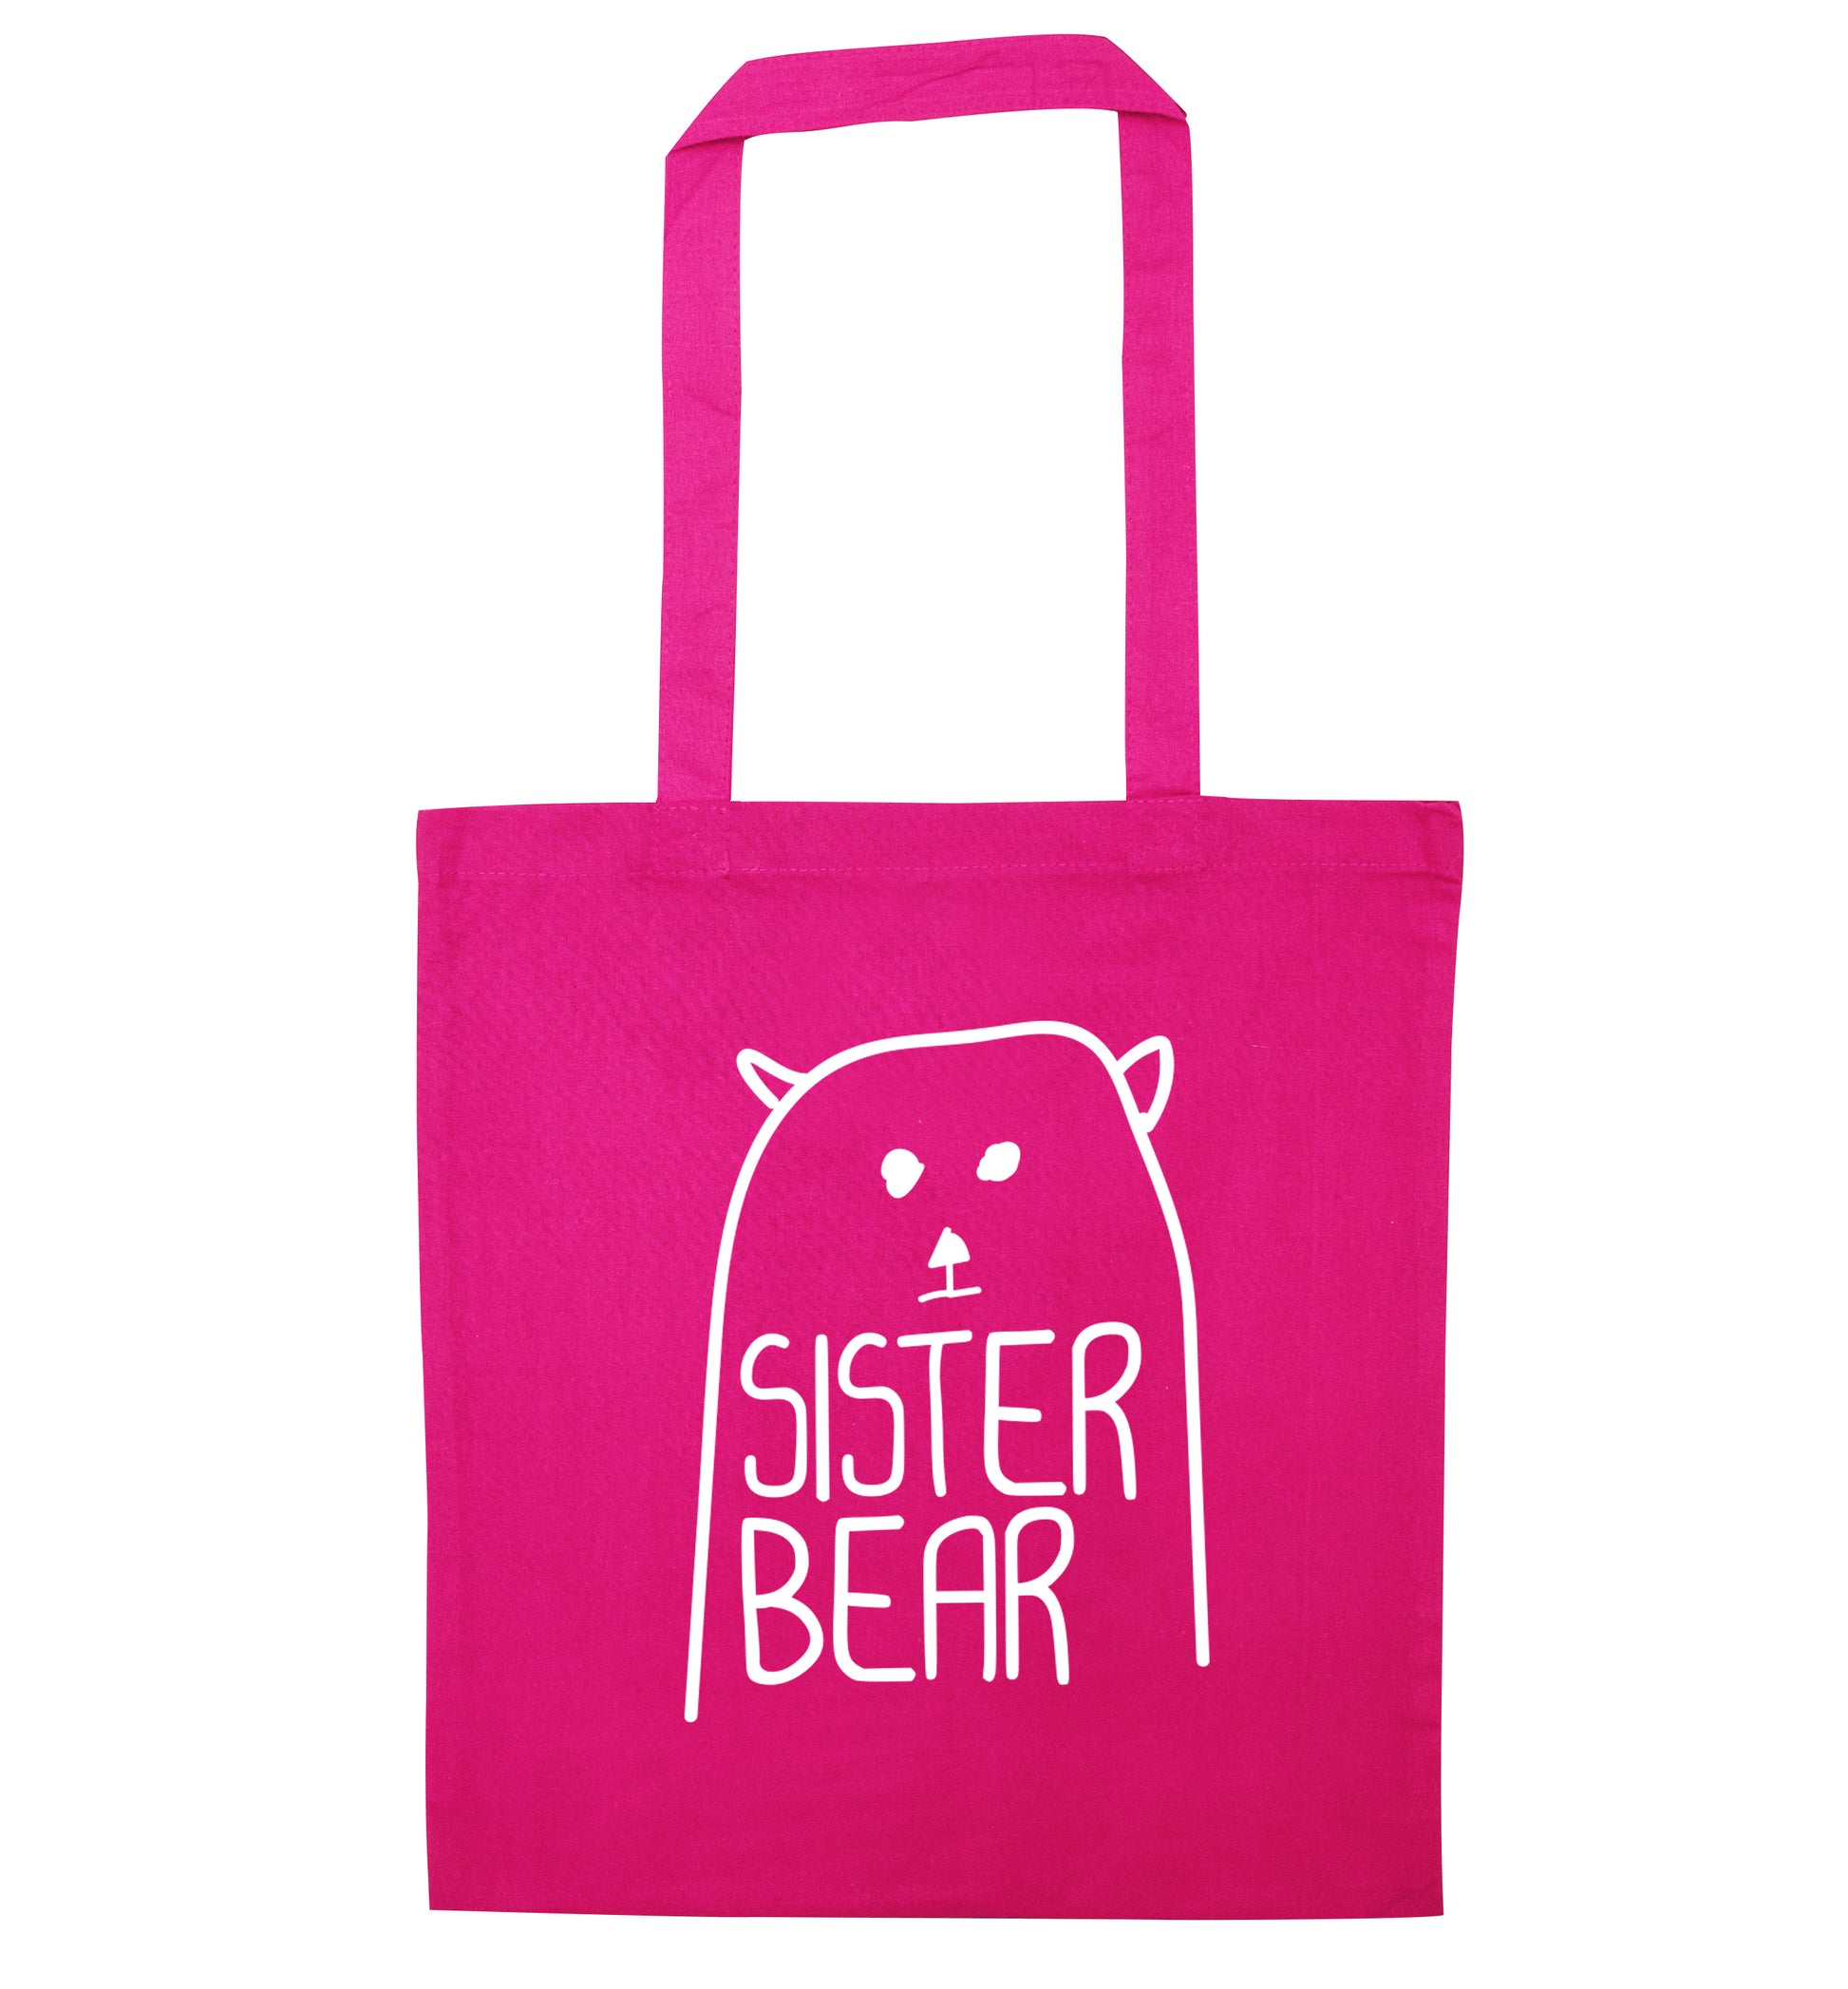 Sister bear pink tote bag